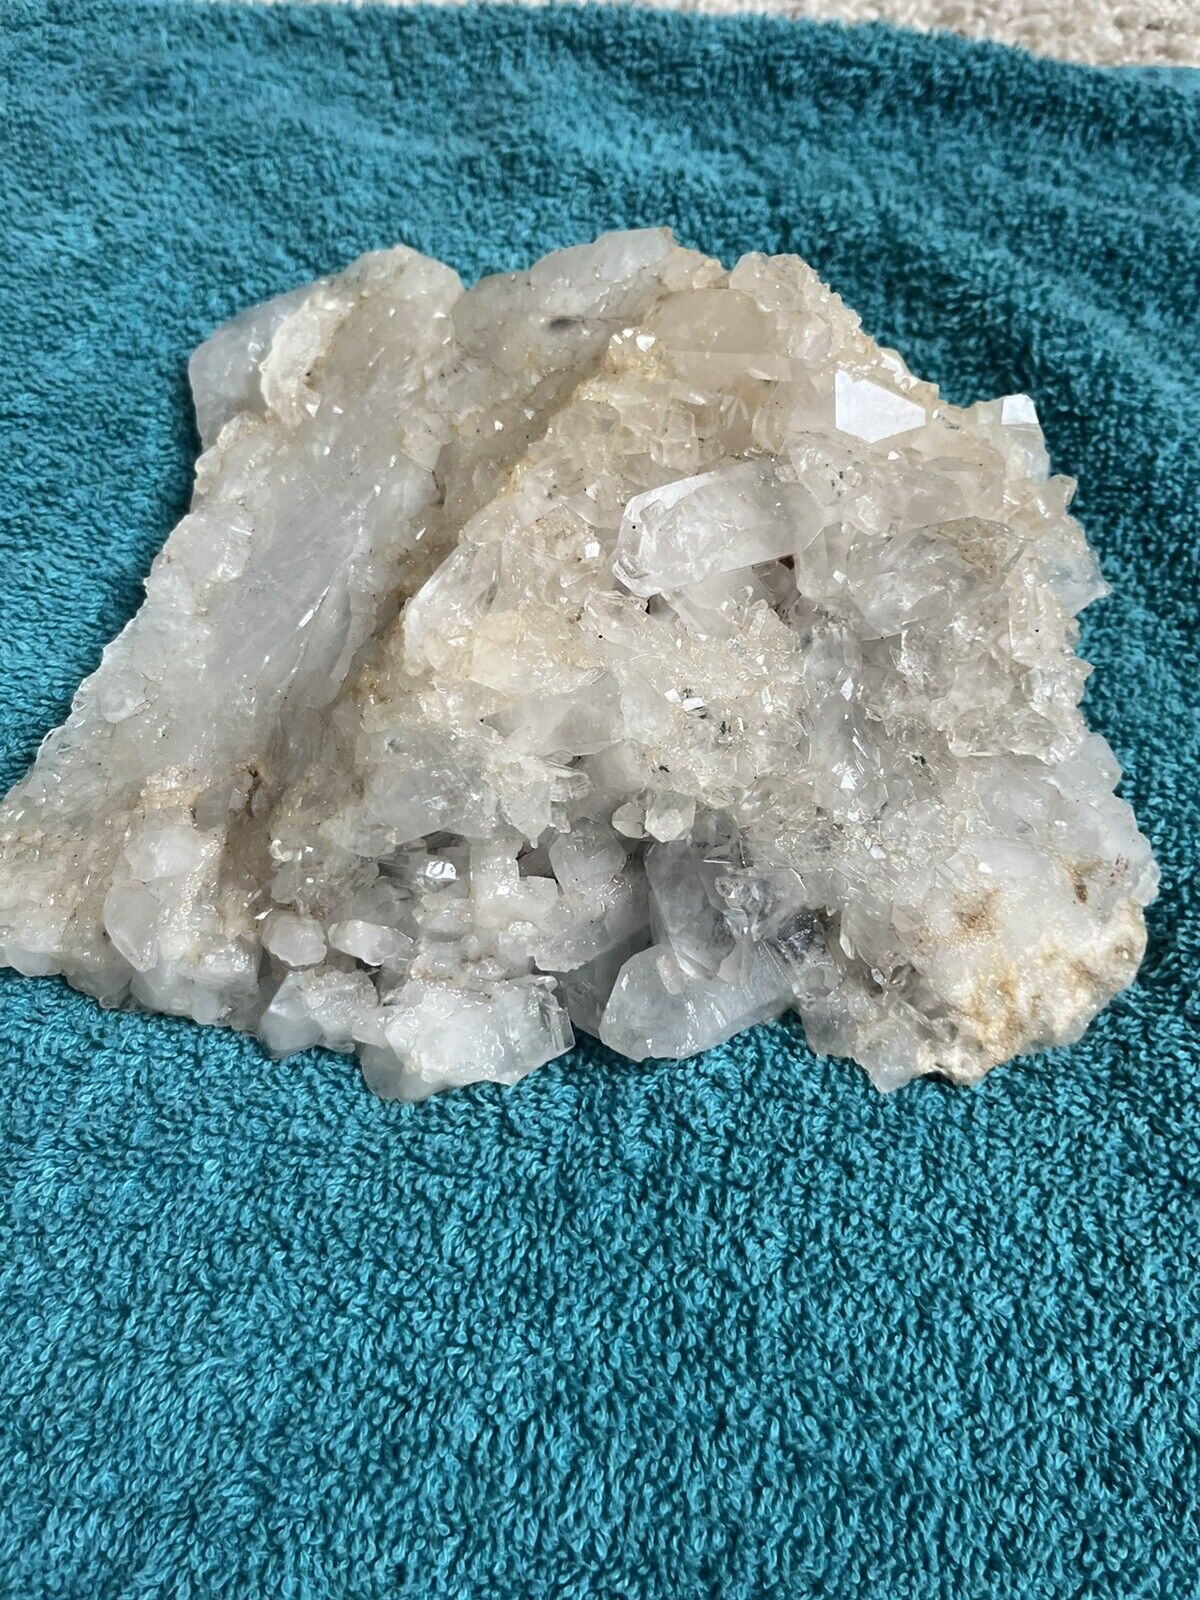 4LB Natural White Crystal Quartz Crystal Cluster Specimen